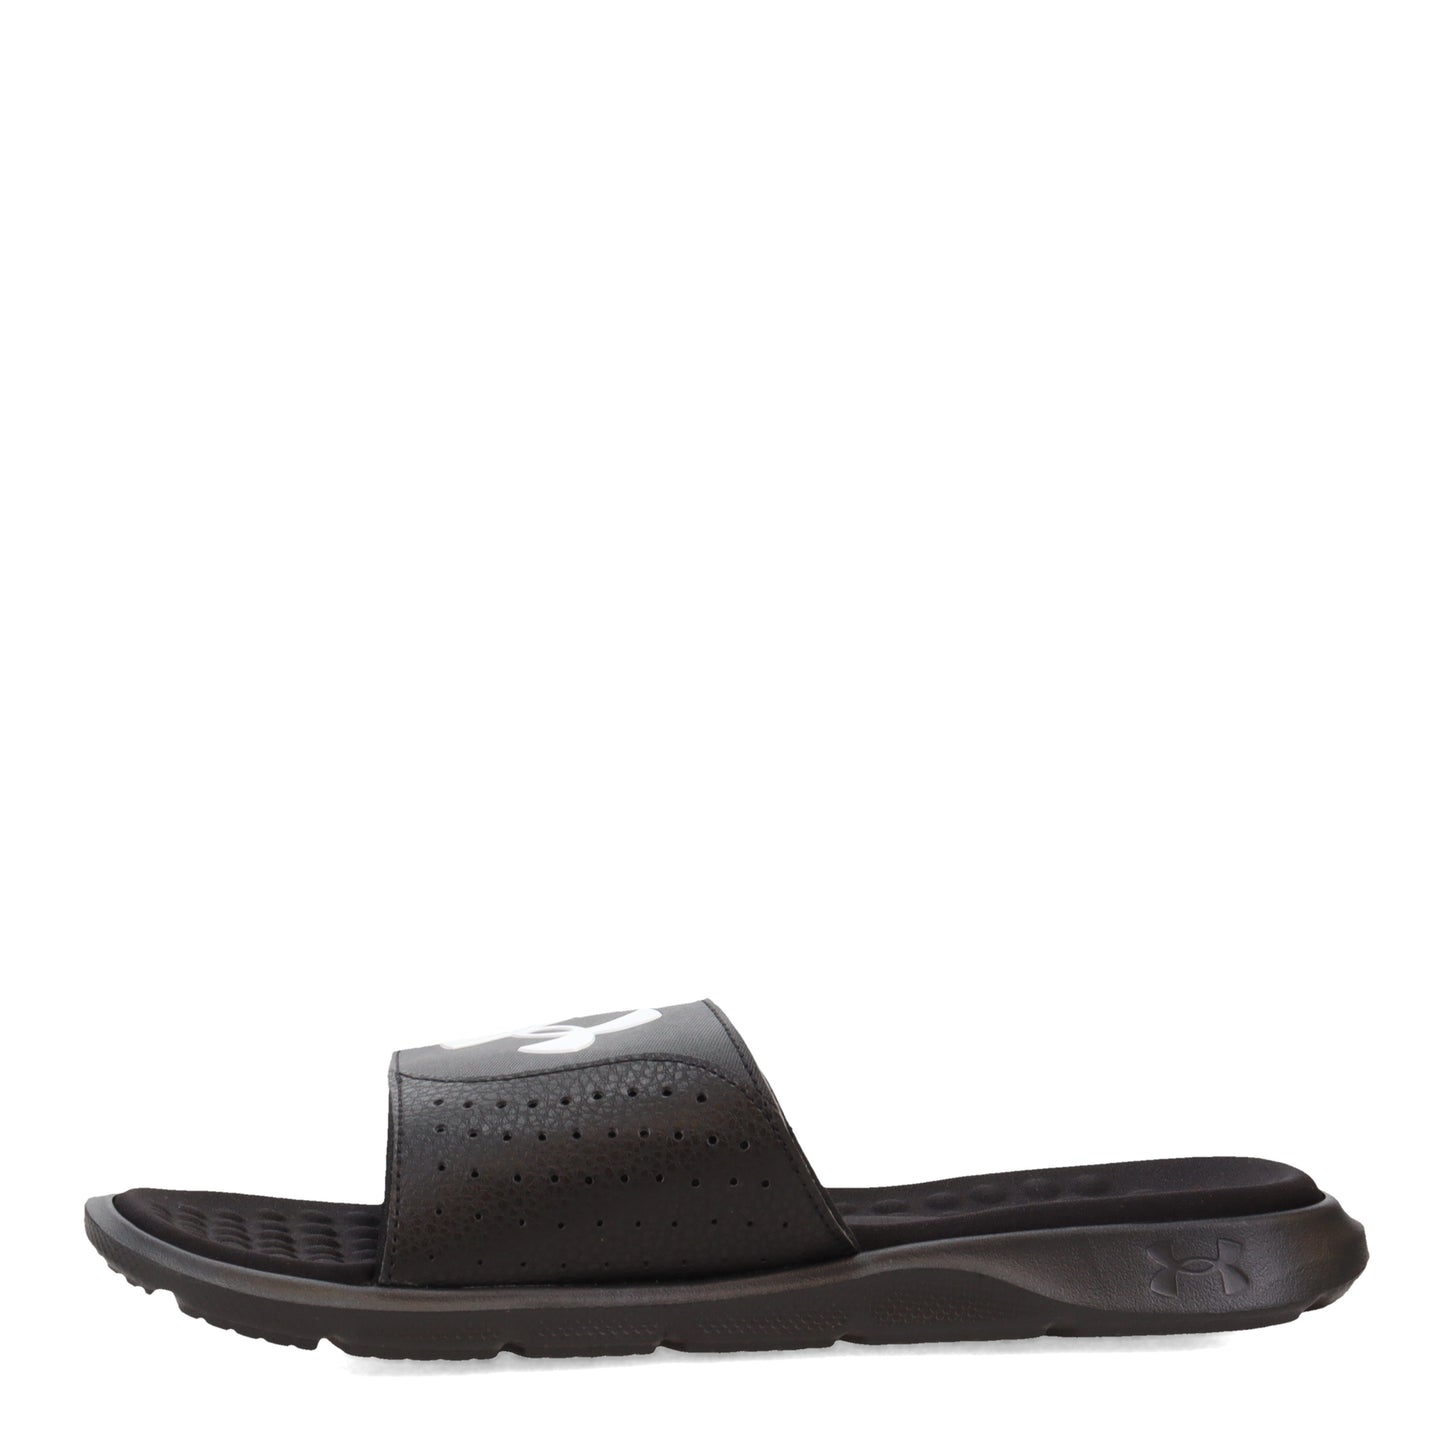 Peltz Shoes  Men's Under Armour Ignite 7 Slide Sandal Black/White 3026023-001